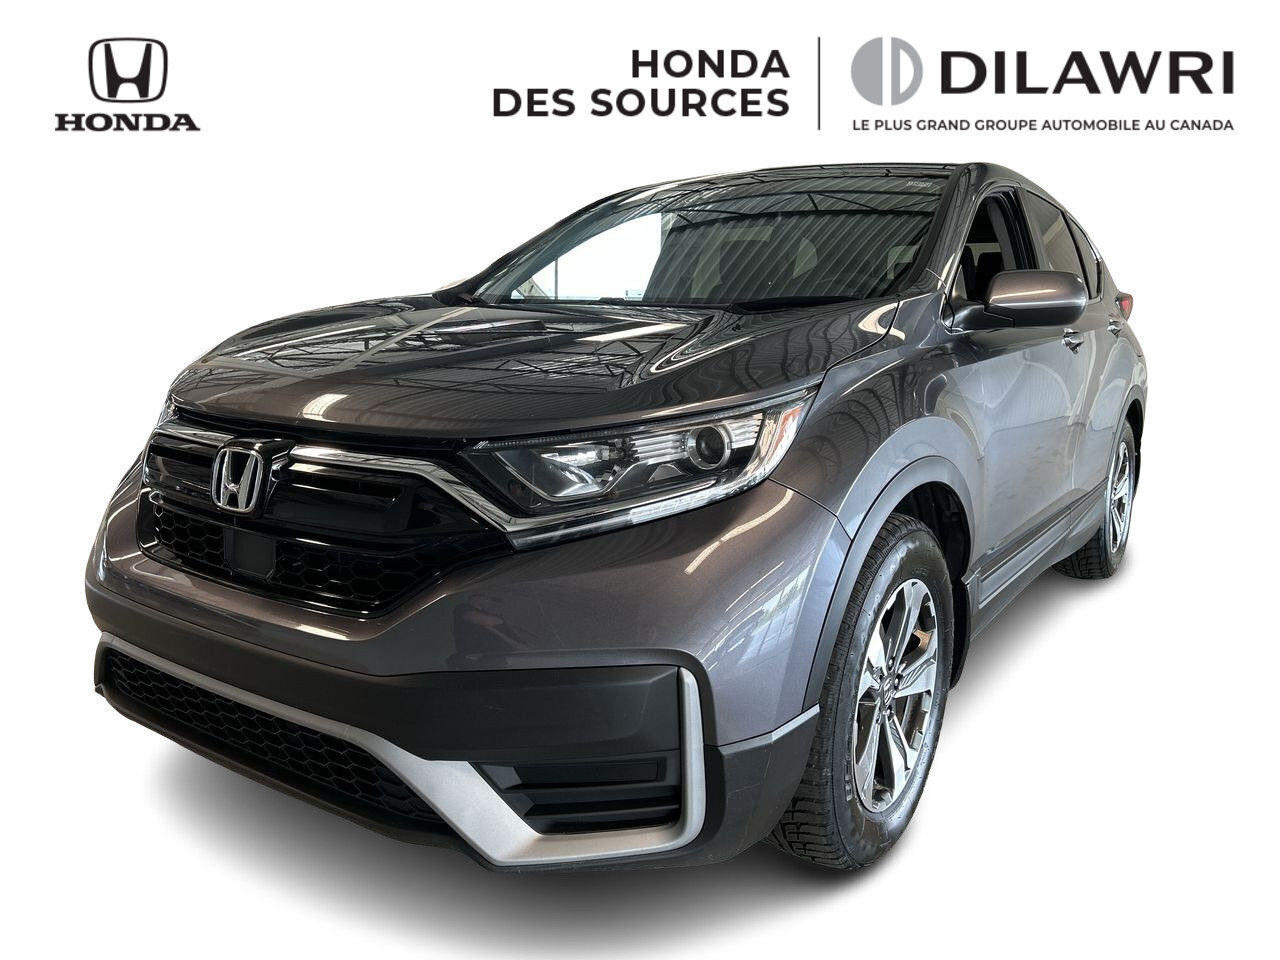 2020 Honda CR-V LX, Carplay, Bluetooth, Caméra, Phares à DEL, USB 